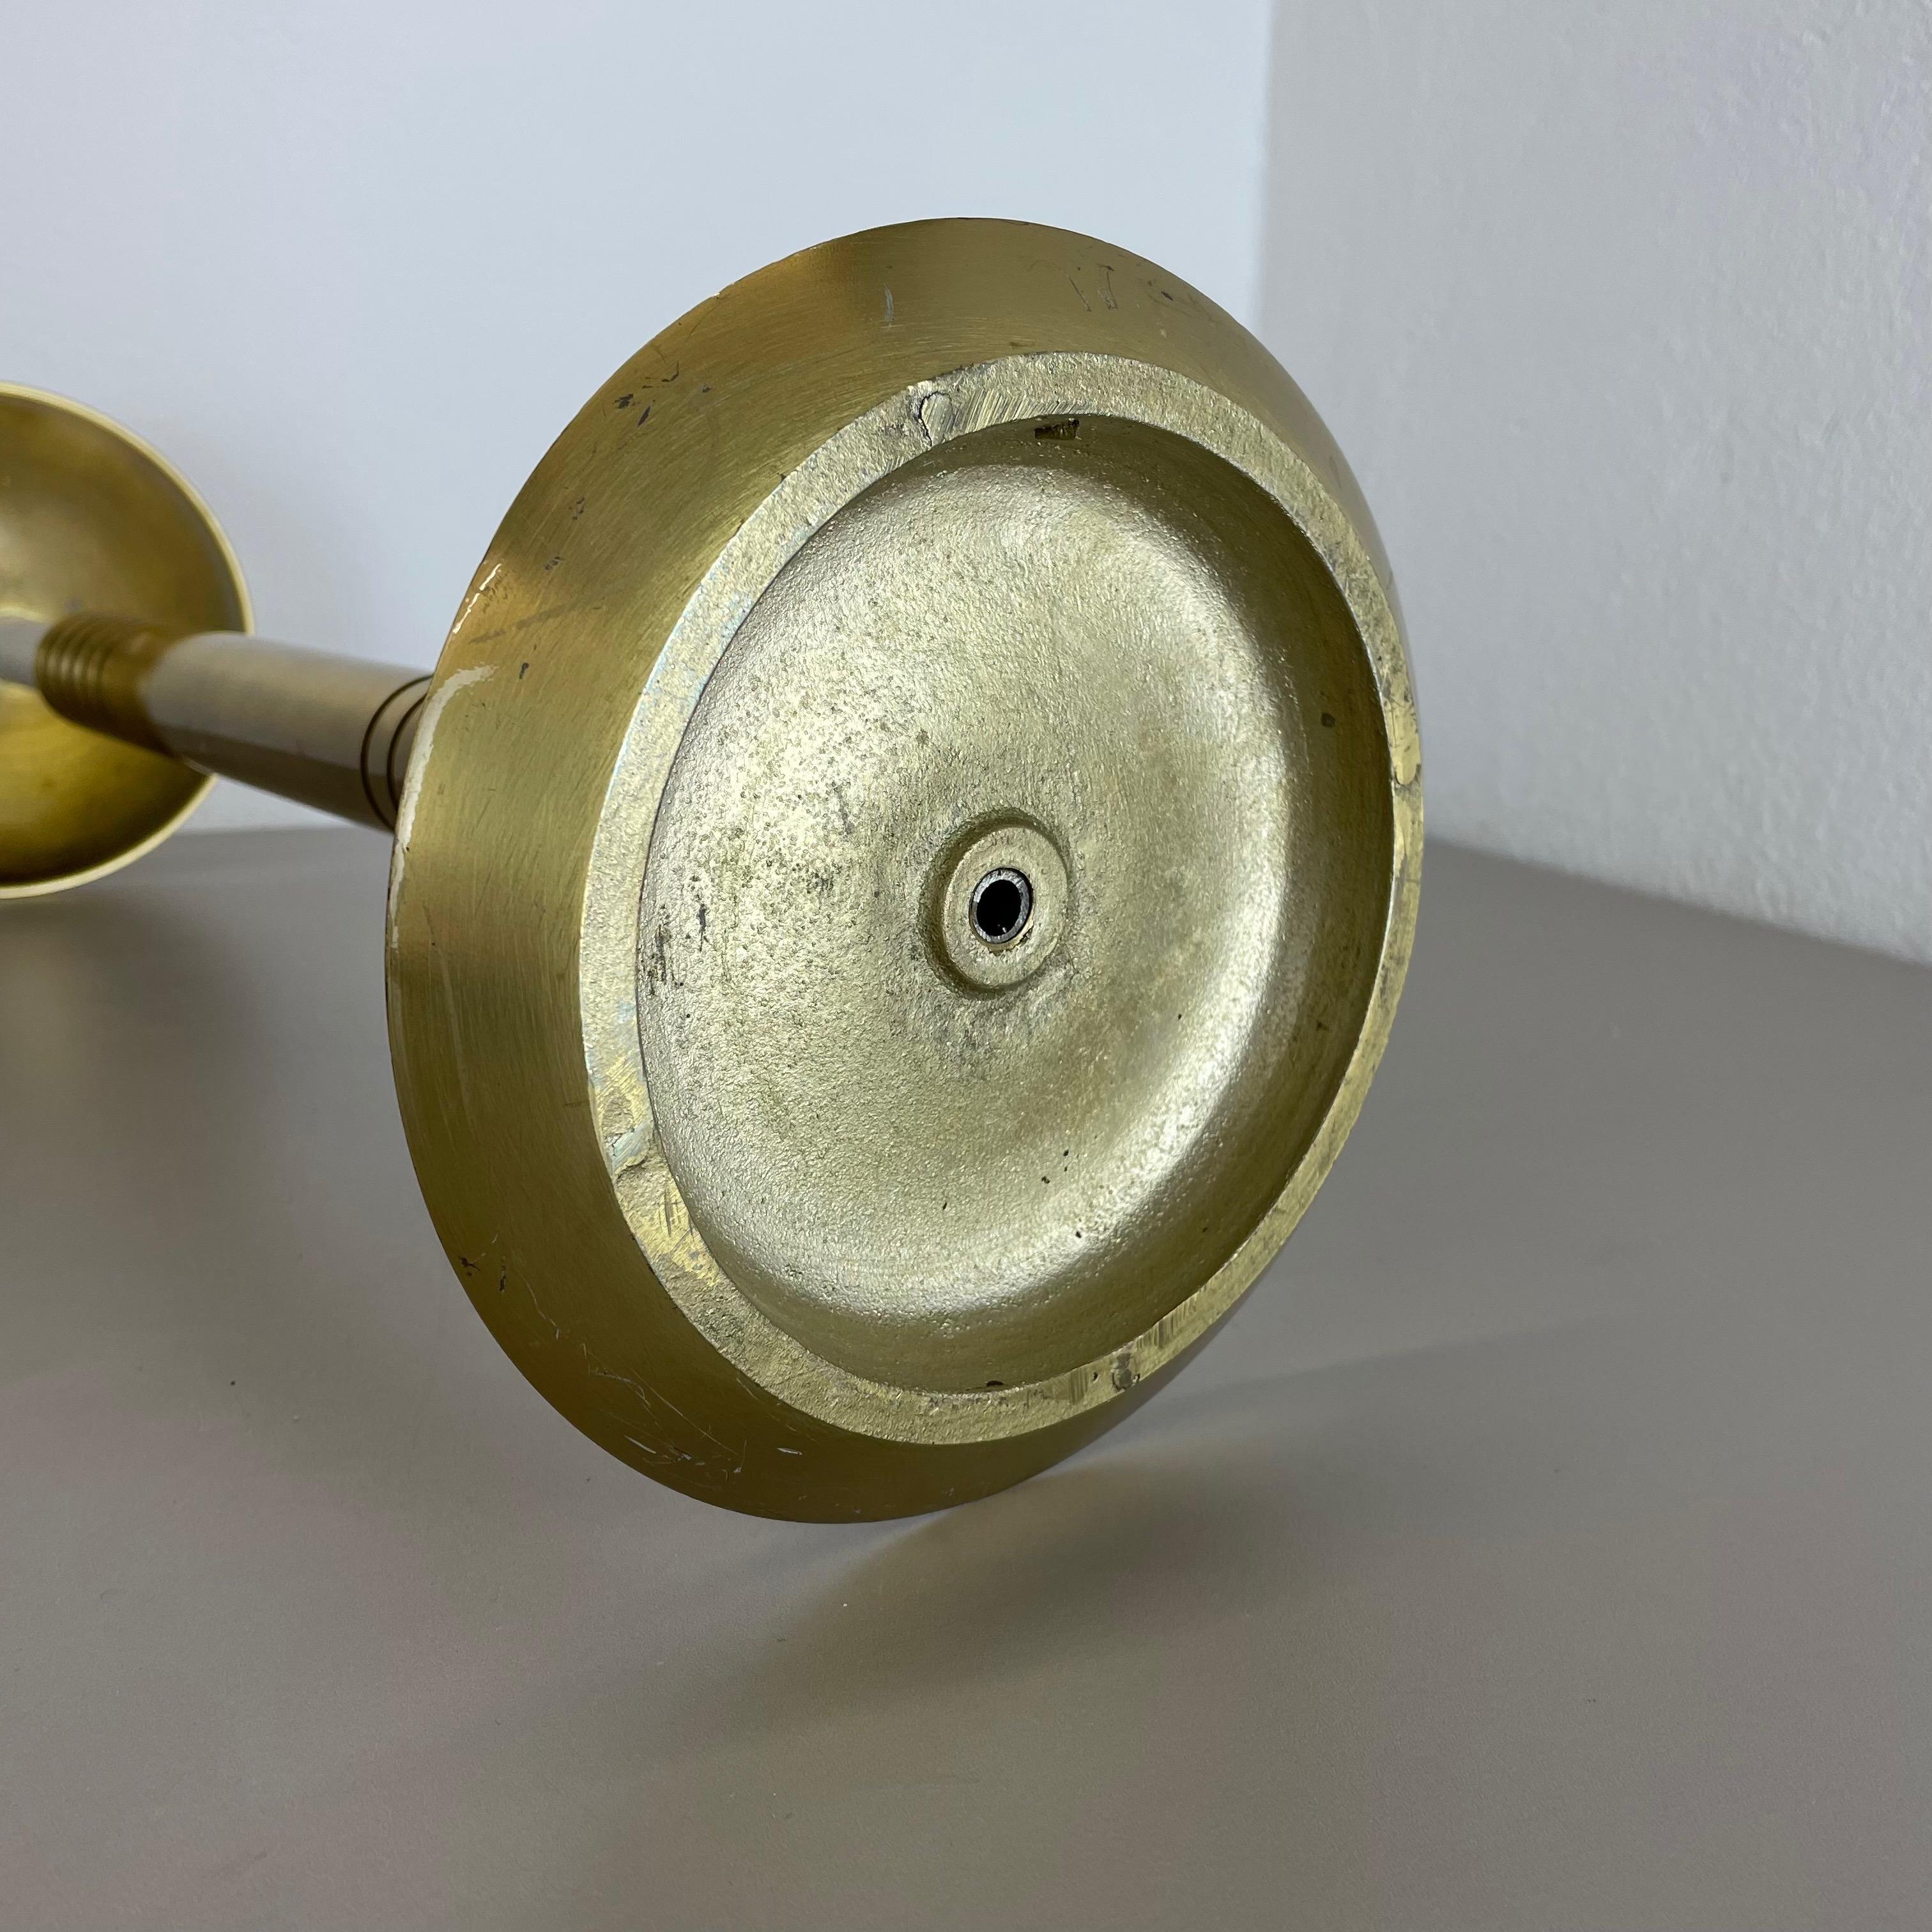 XL 3, 8kg Modernist Sculptural Brutalist Brass Floor Candleholder, Italy, 1950s For Sale 11